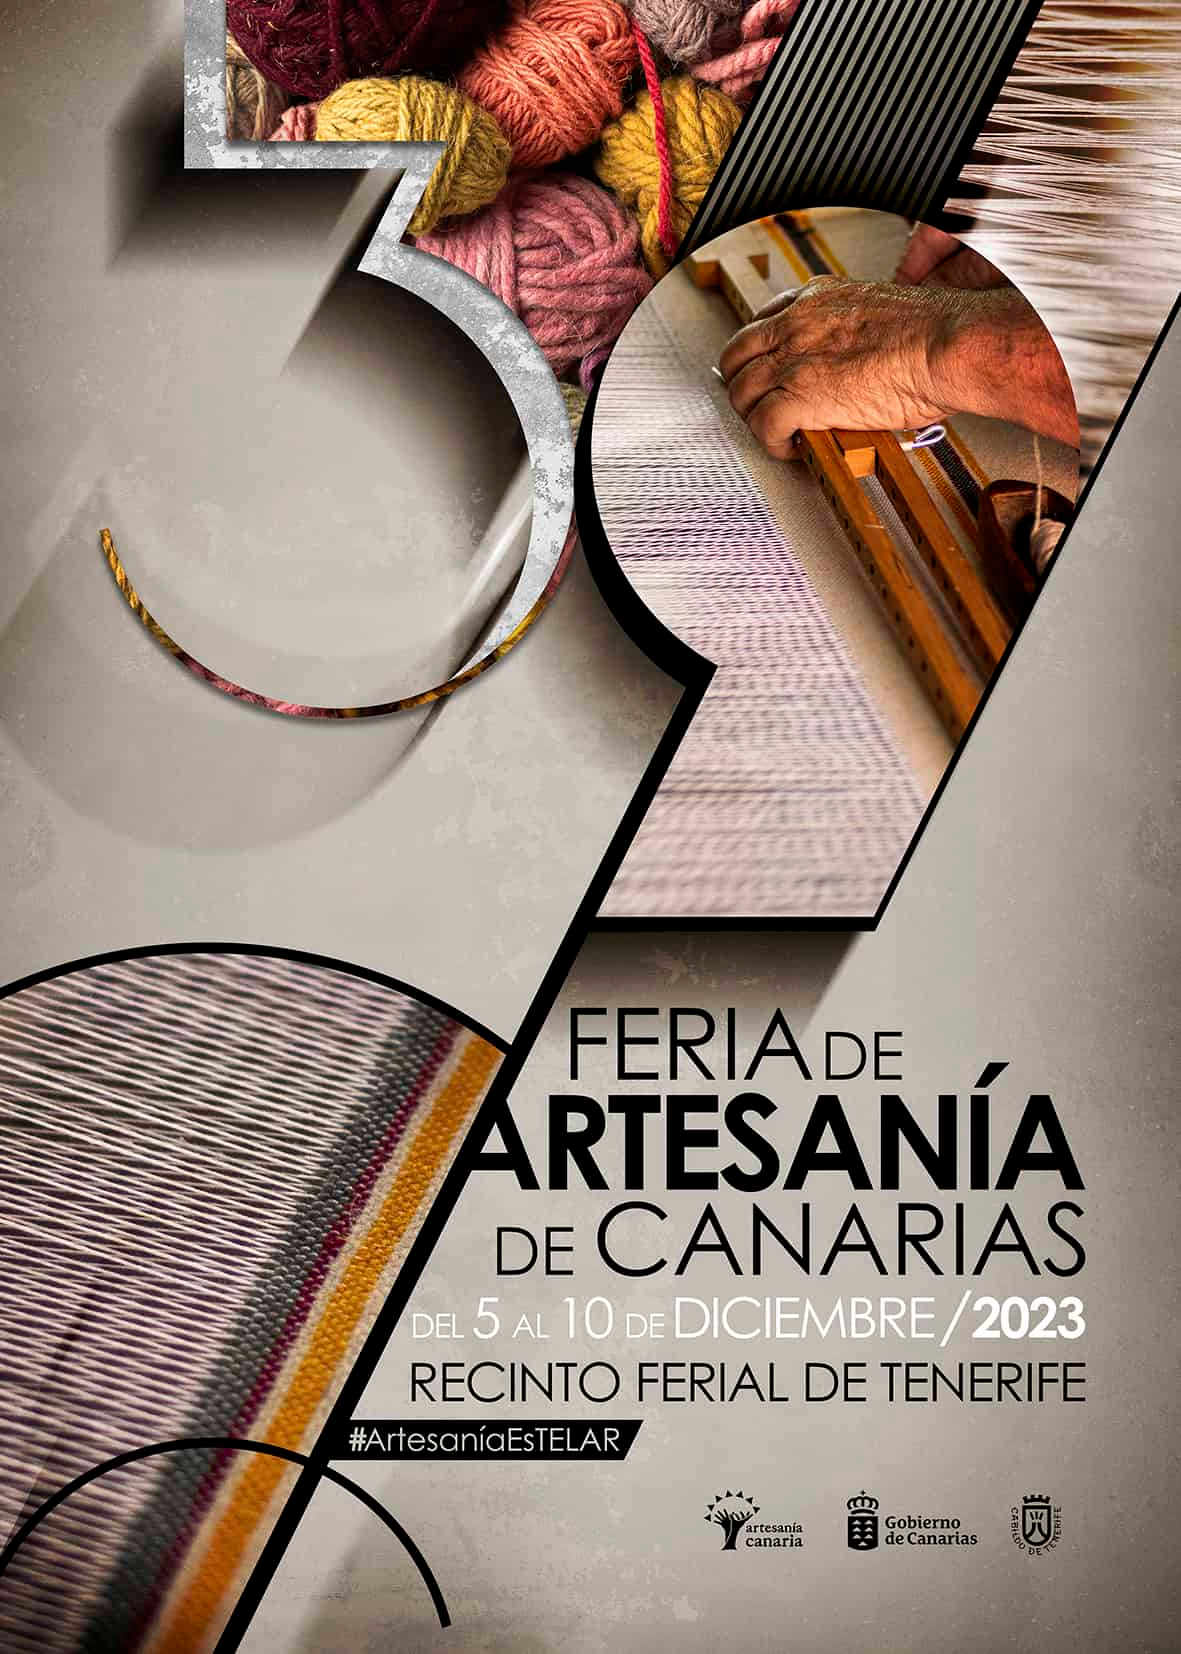 Cartel anunciador de la 39ª Feria de Artesanía de Canarias